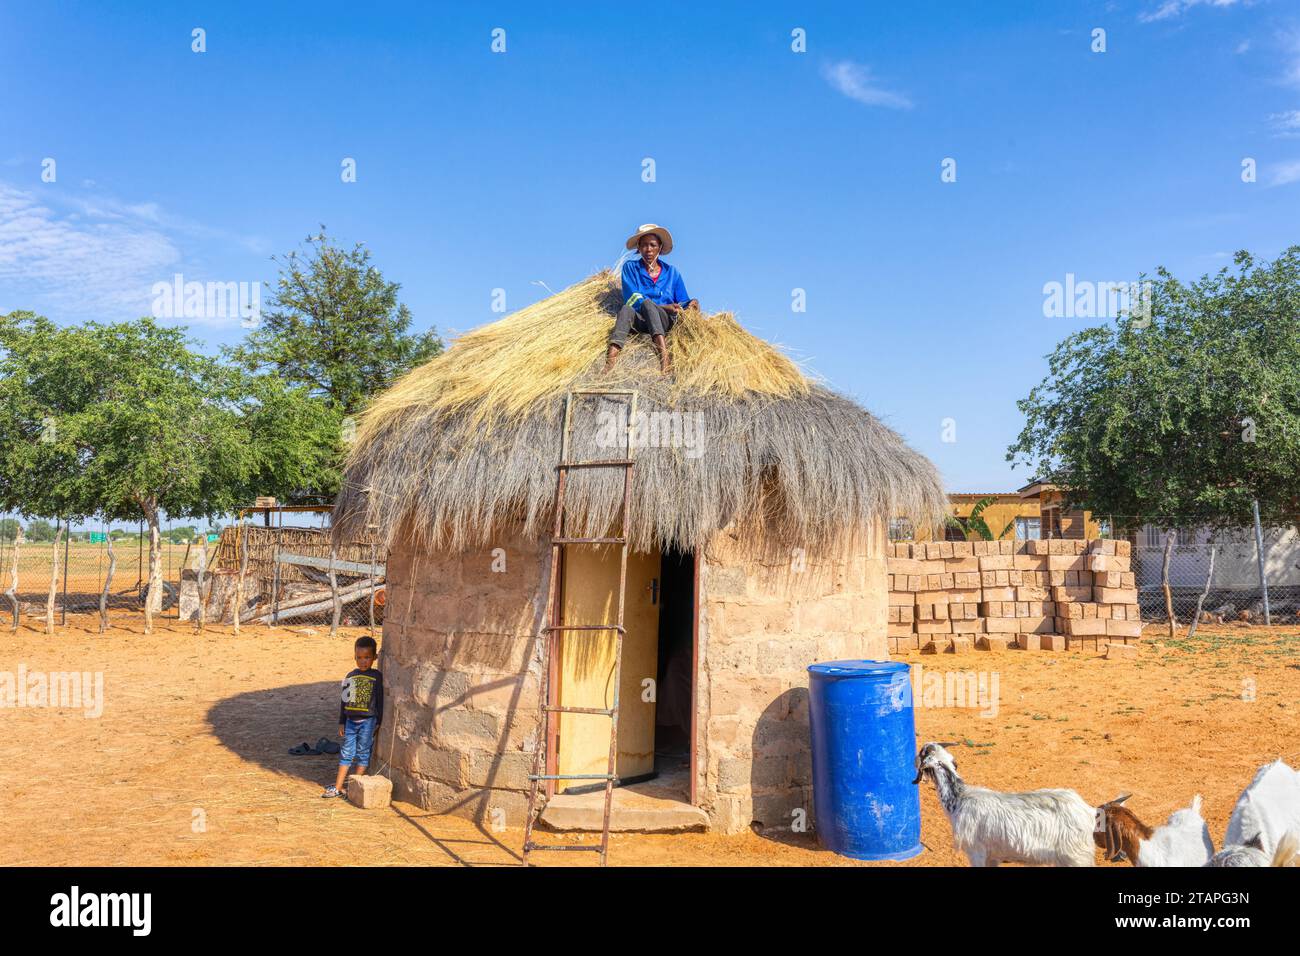 afrikanerin kletterte, um ein Strohdach auf einer Hütte zu reparieren, Kind und Vieh im Hof Stockfoto